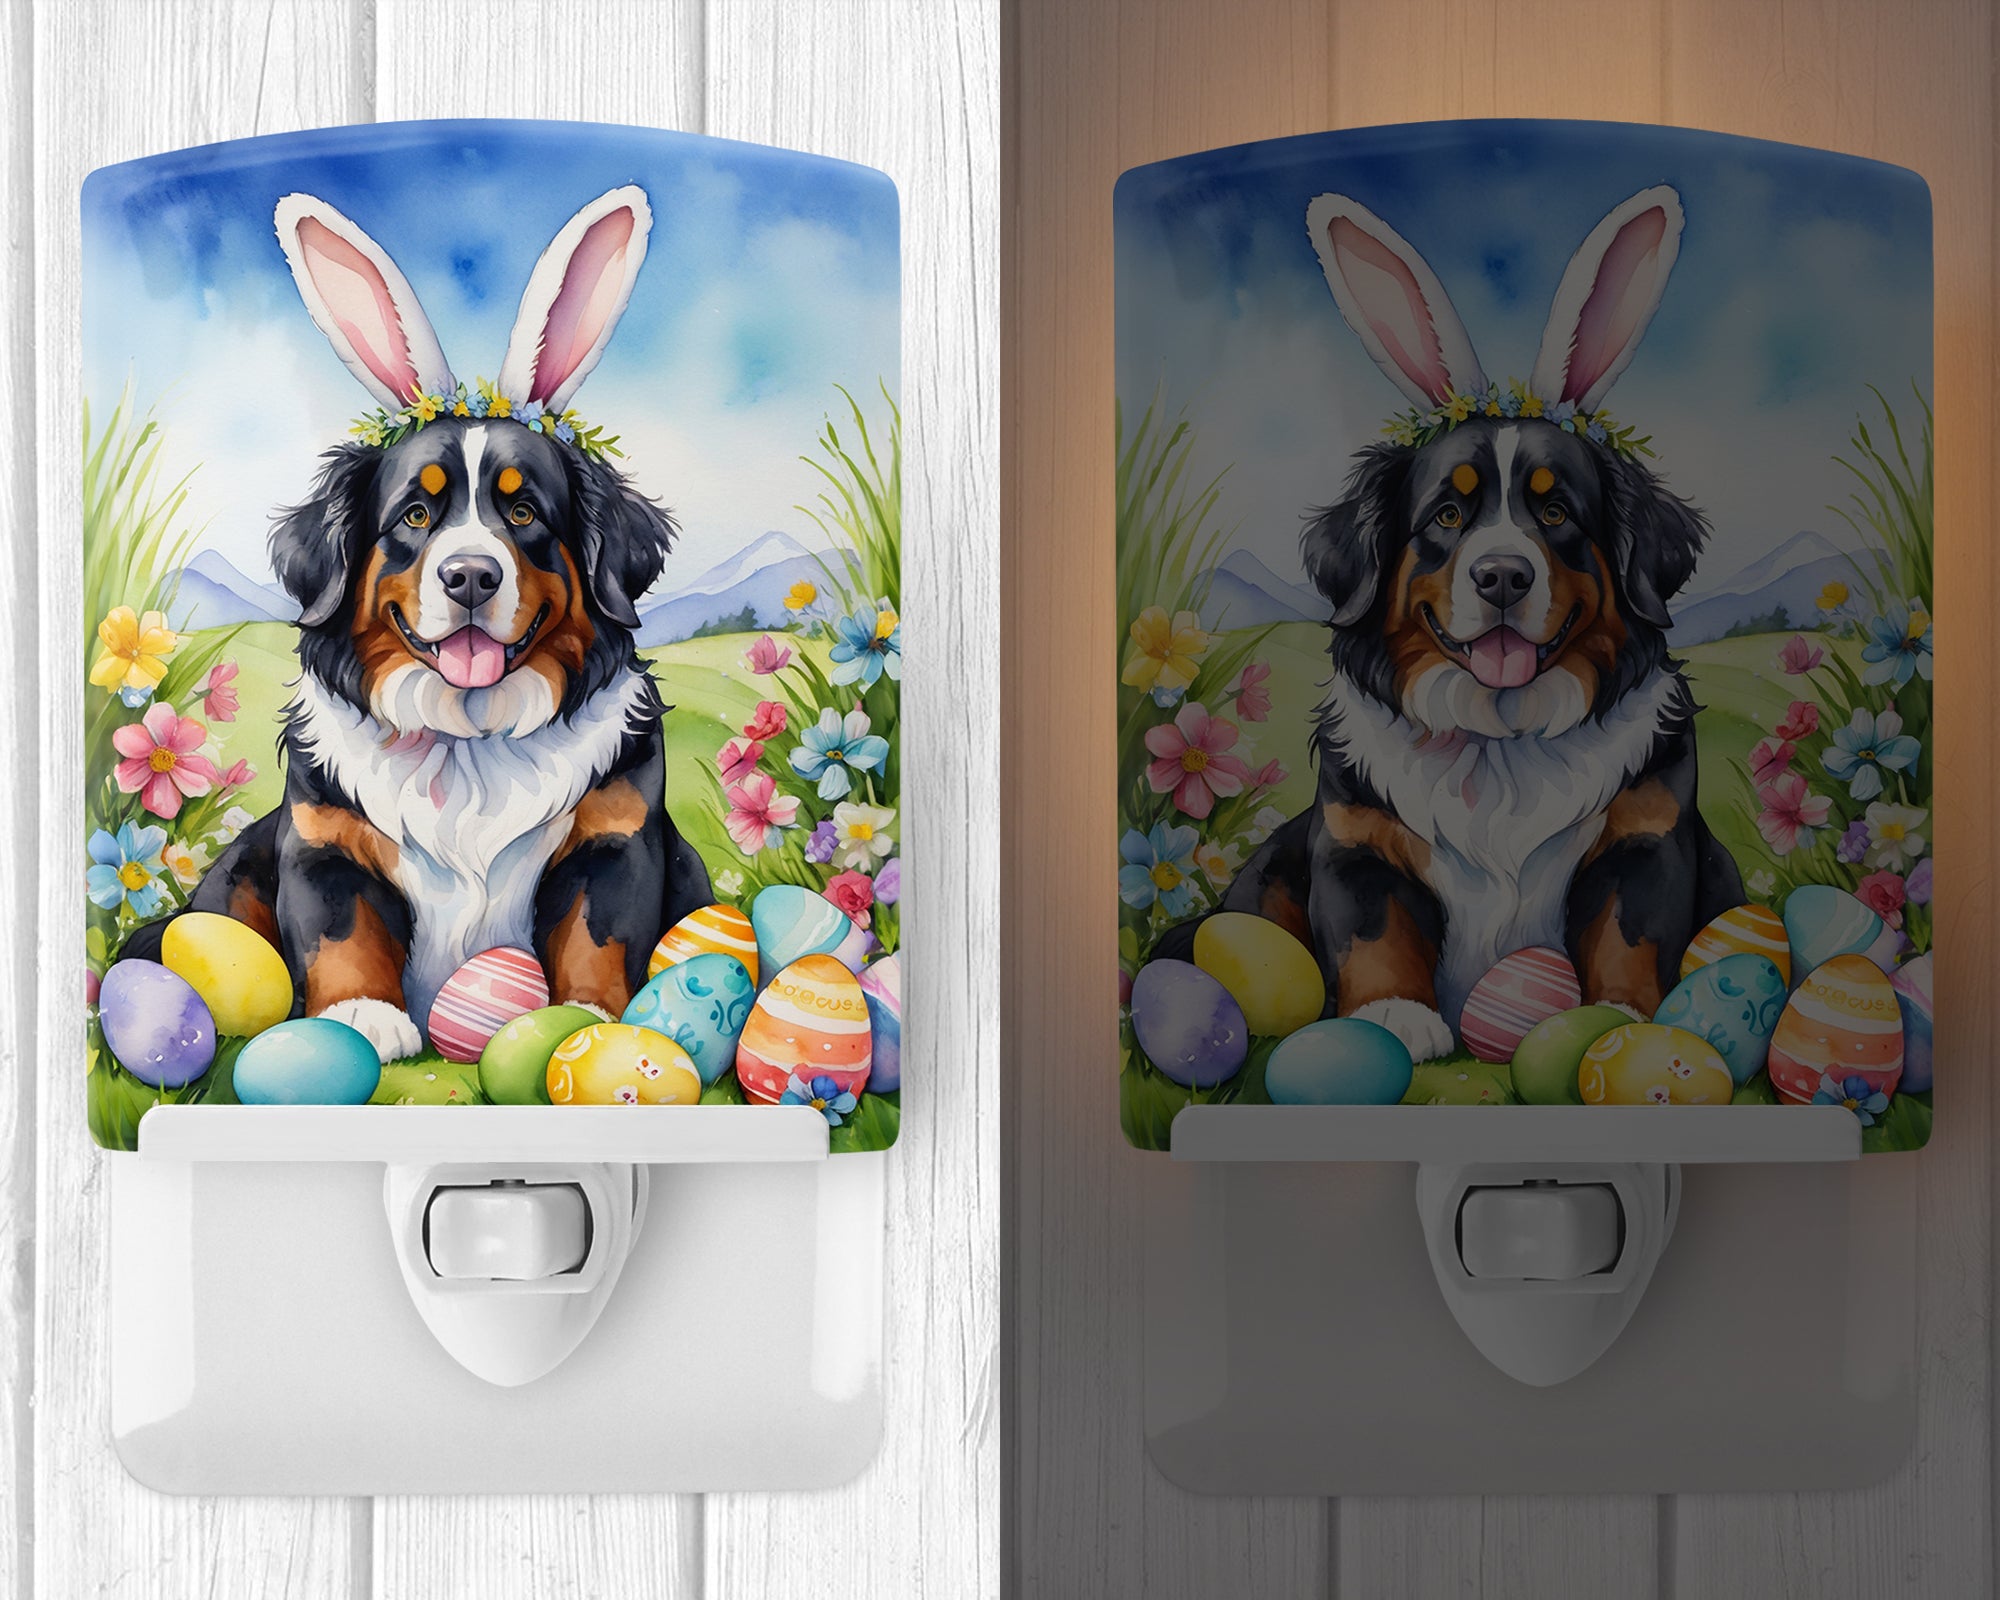 Buy this Bernese Mountain Dog Easter Egg Hunt Ceramic Night Light